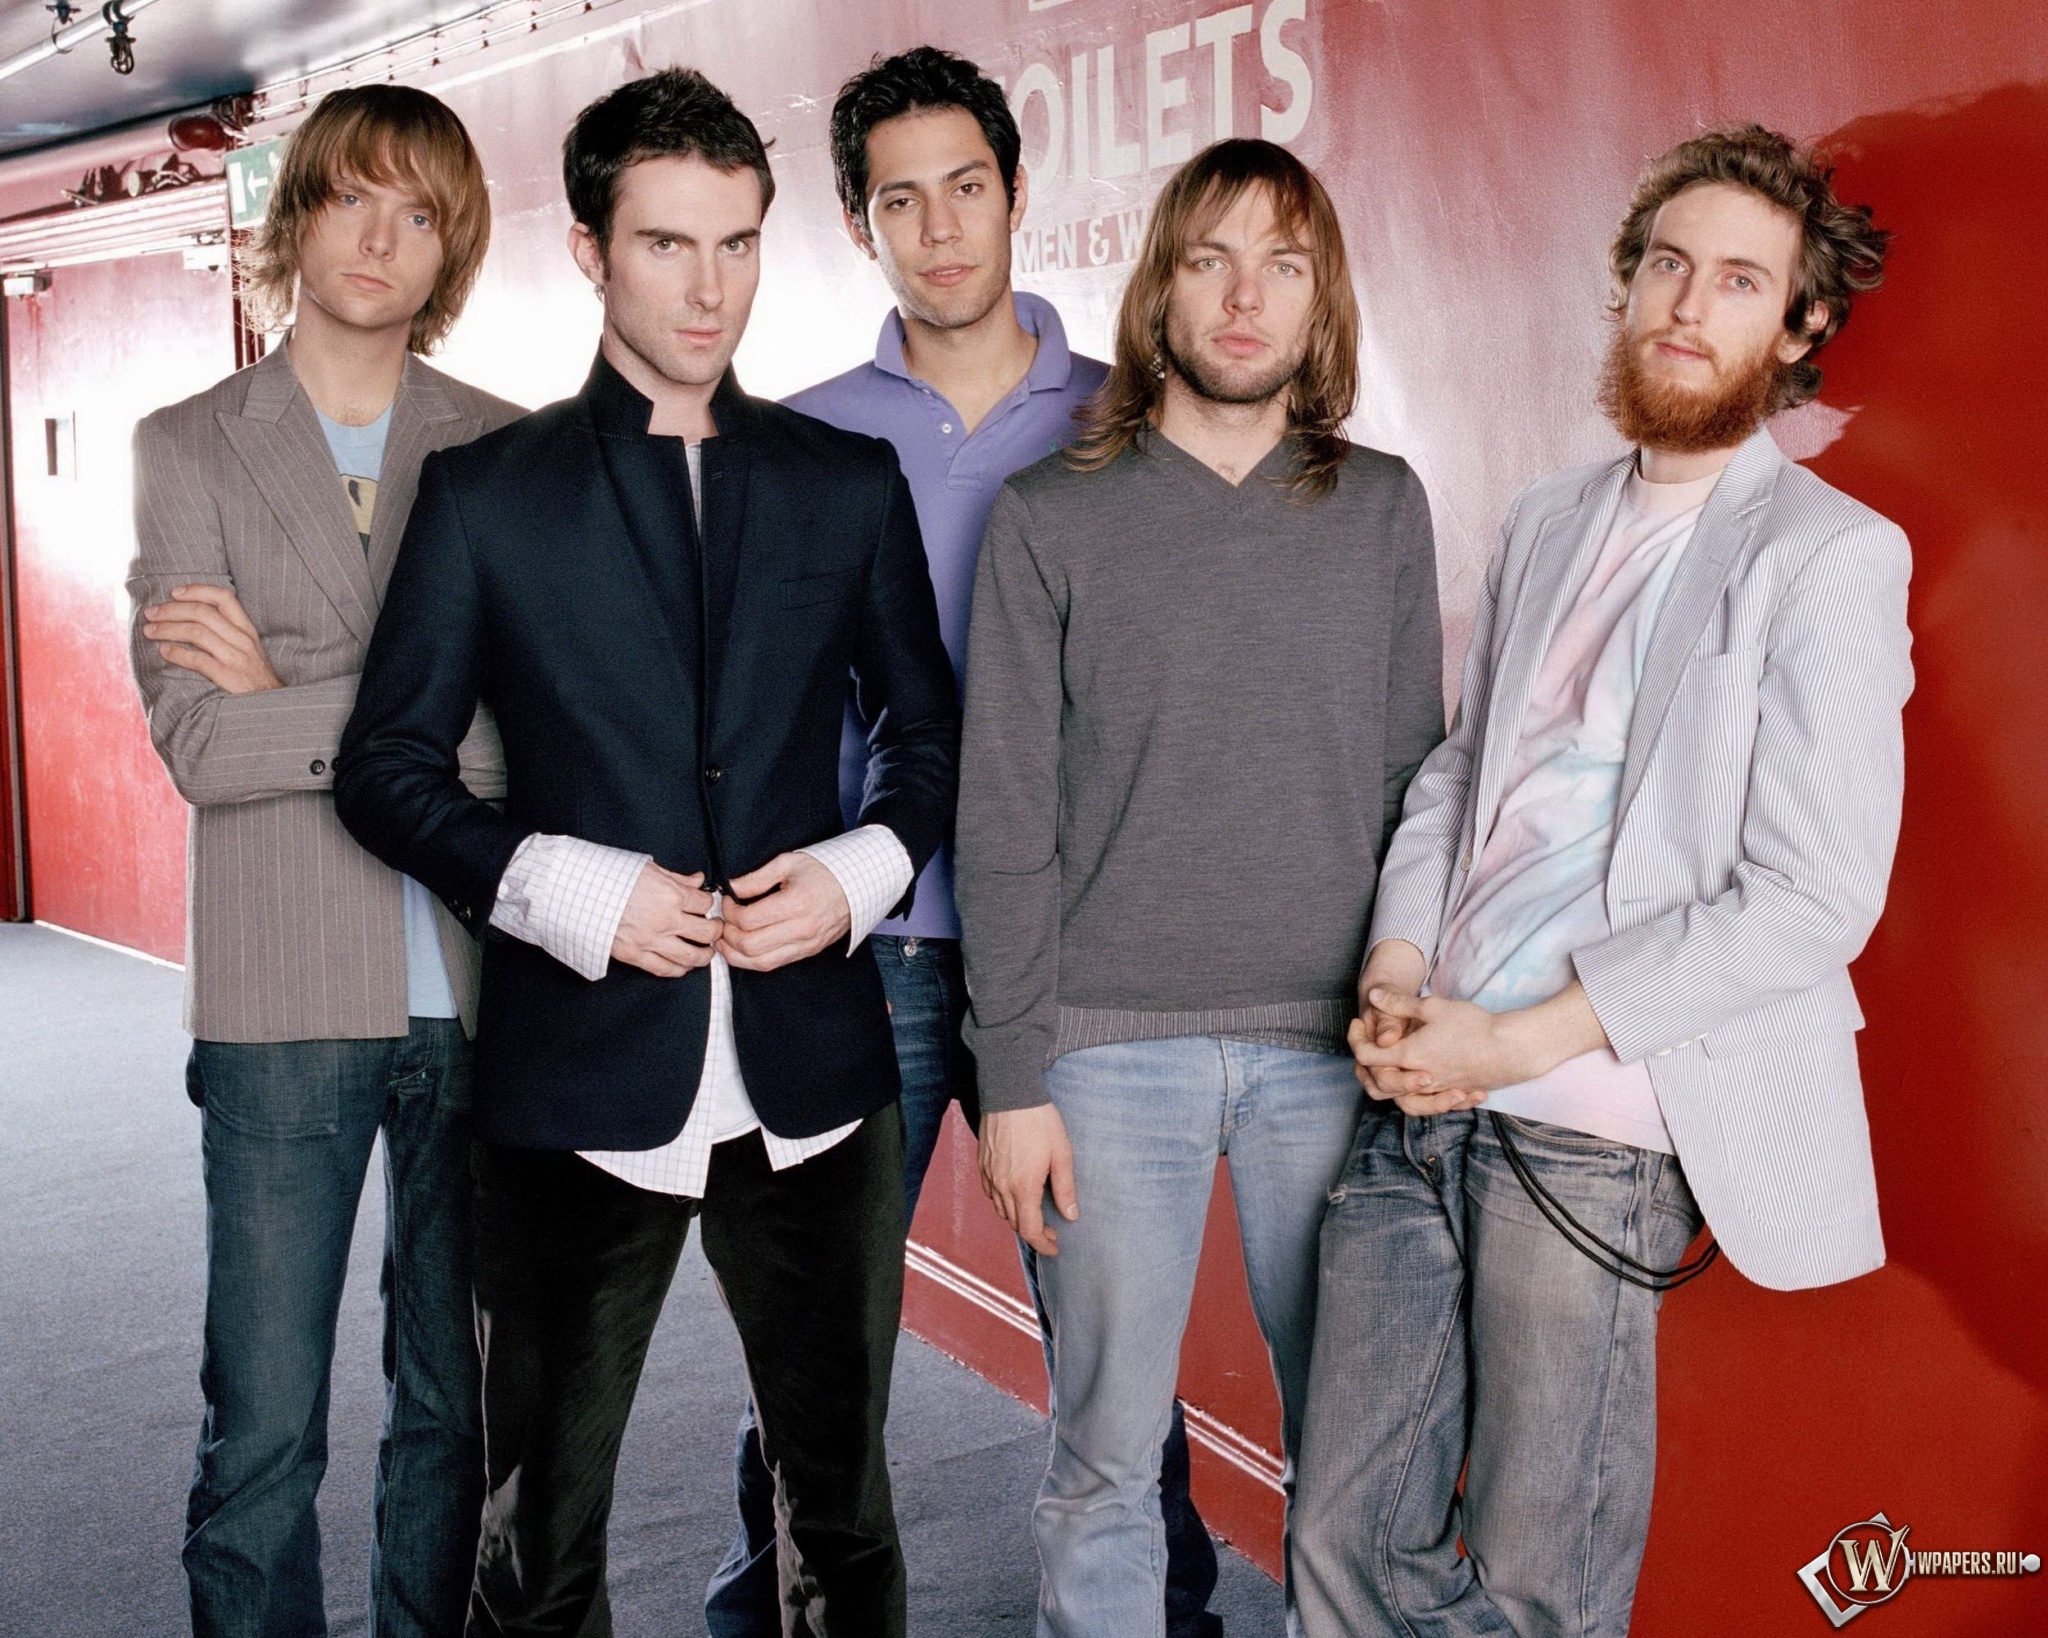 Марон 5 песни. Мароон 5. Группа марун 5. Maroon 5 2002. Maroon 5 фото группы.